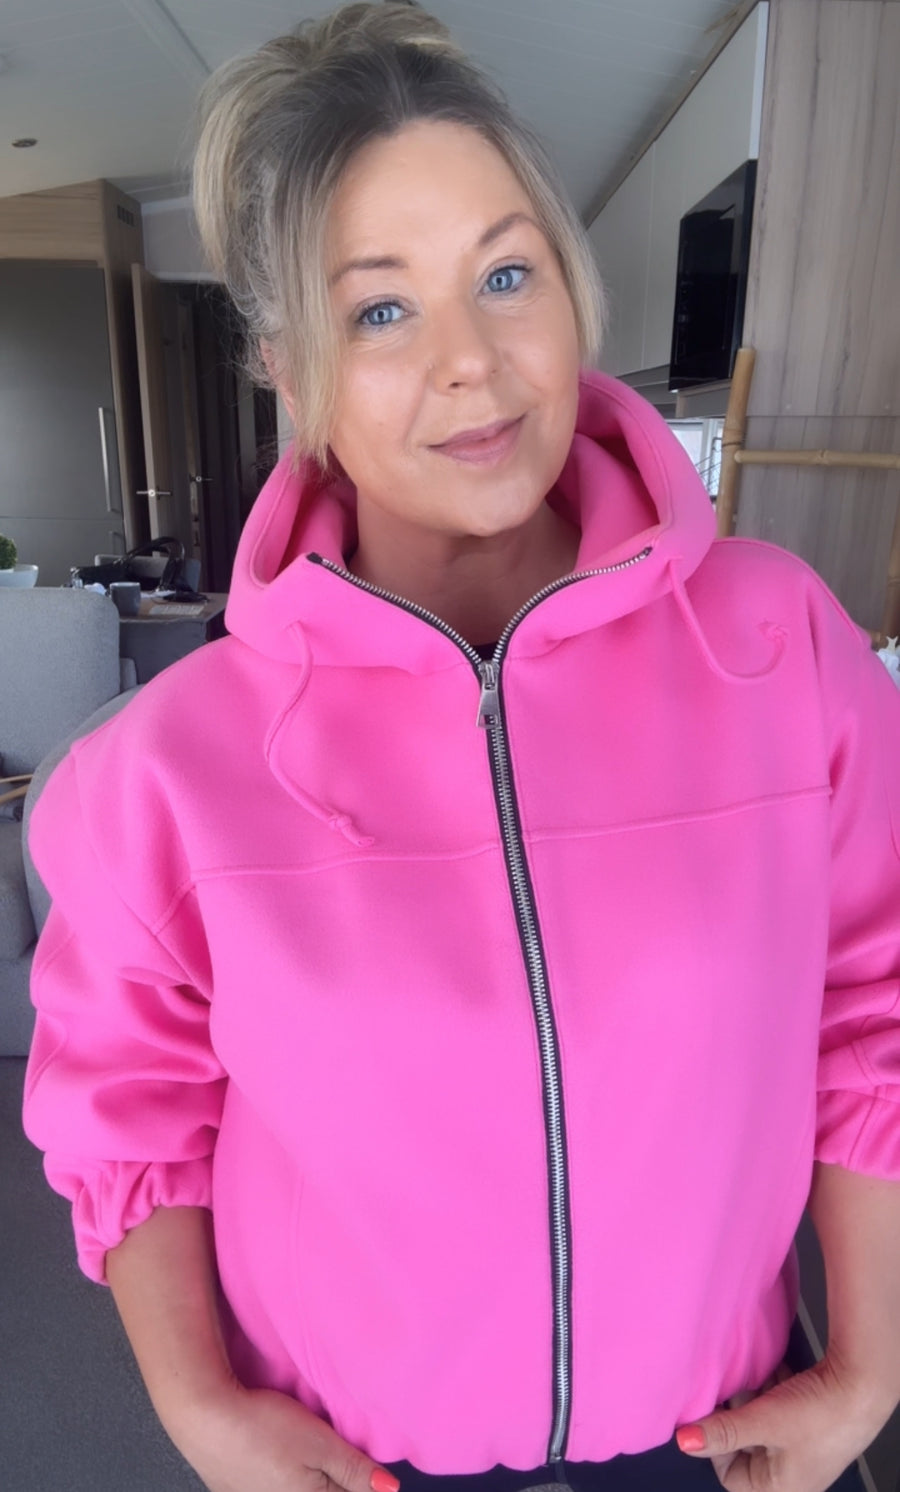 Susan Zip Jacket Pink